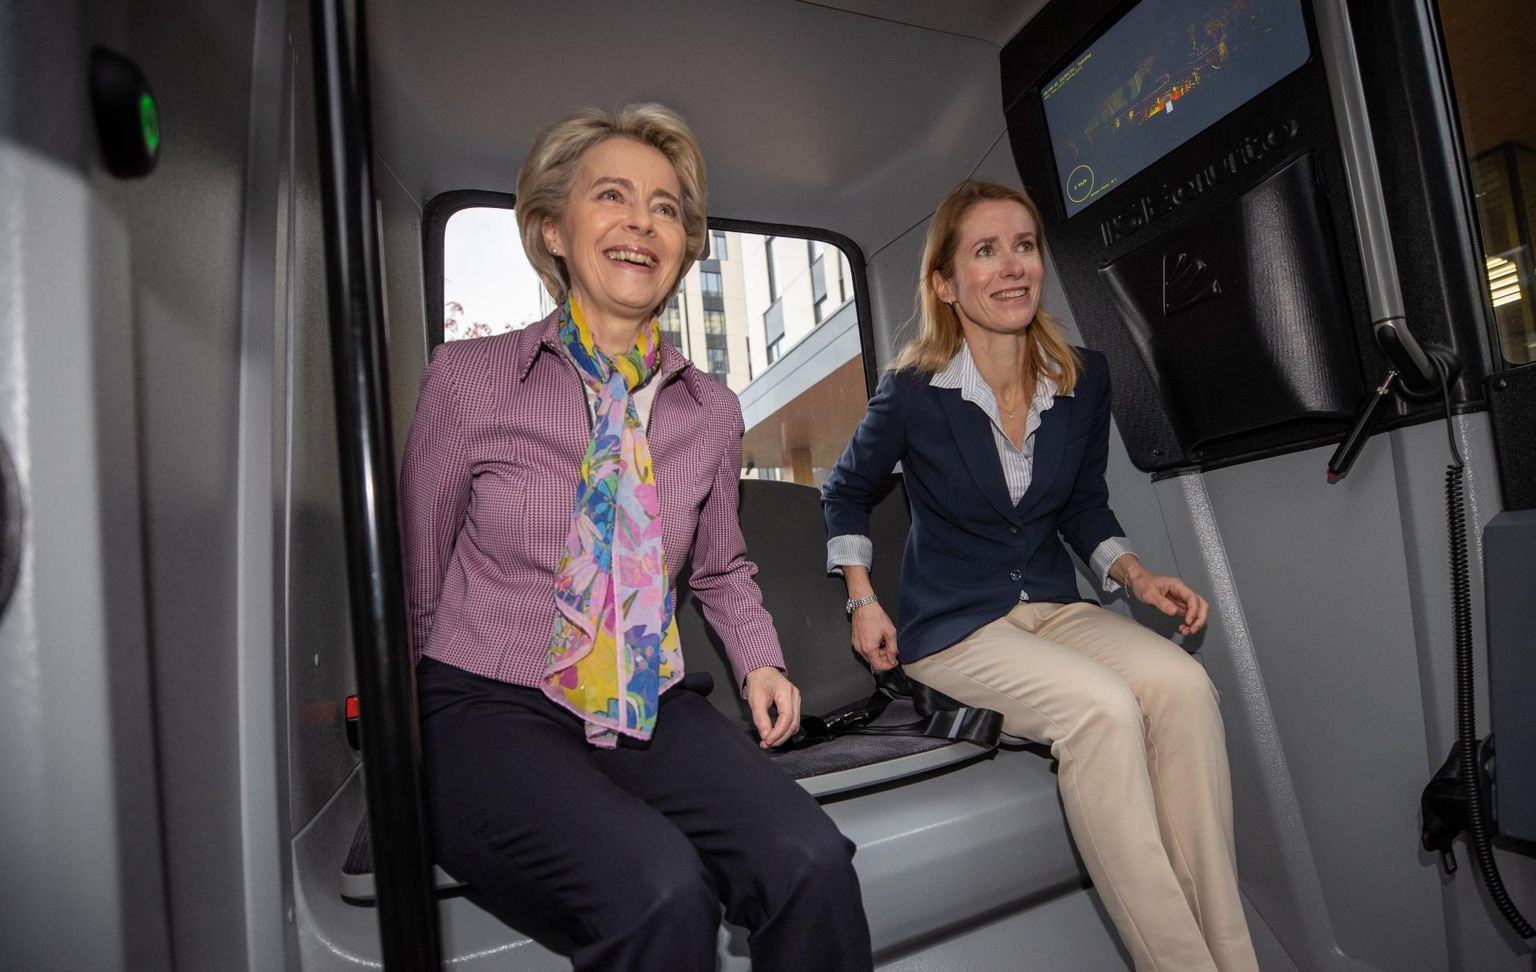 Euroopa Komisjoni president Ursula von der Leyen (vasakul) ja Eesti peaminister Kaja Kallas tiirutasid eile hommikul Ülemiste linnakus ringi isejuhtiva bussiga. Von der Leyenile tekitas esmakogemus soovi sarnast sõidukit uuesti proovida.